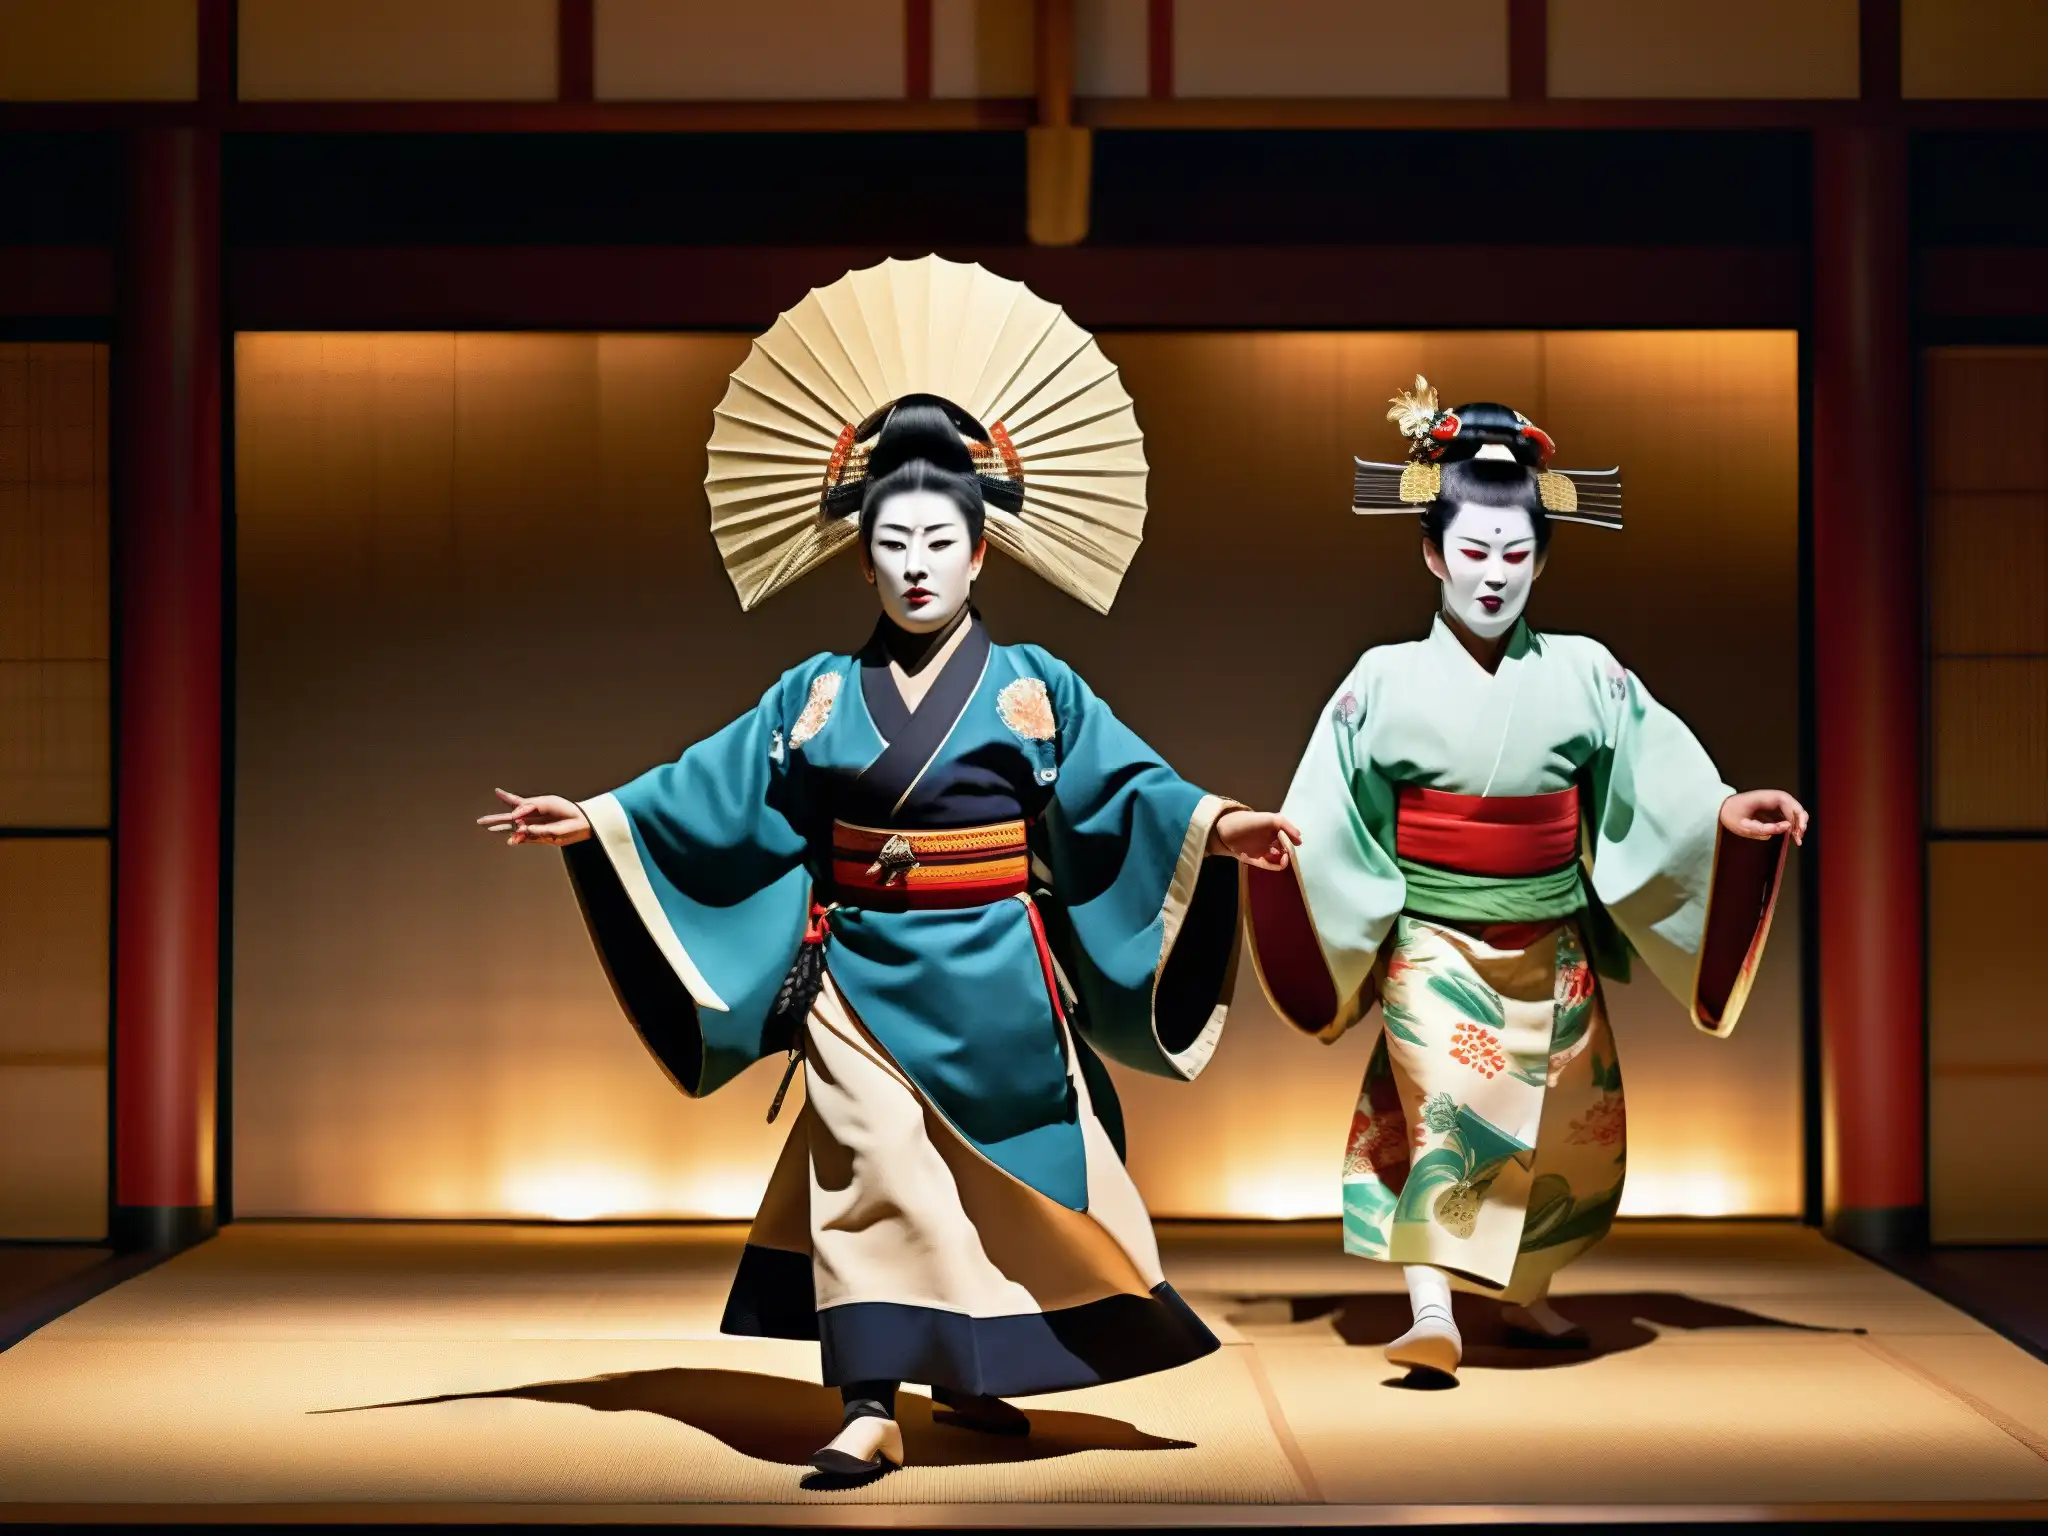 Vibrante actuación de teatro Noh japonés, resucitando mitos y folklore japonés con trajes detallados, máscaras expresivas y movimientos dramáticos